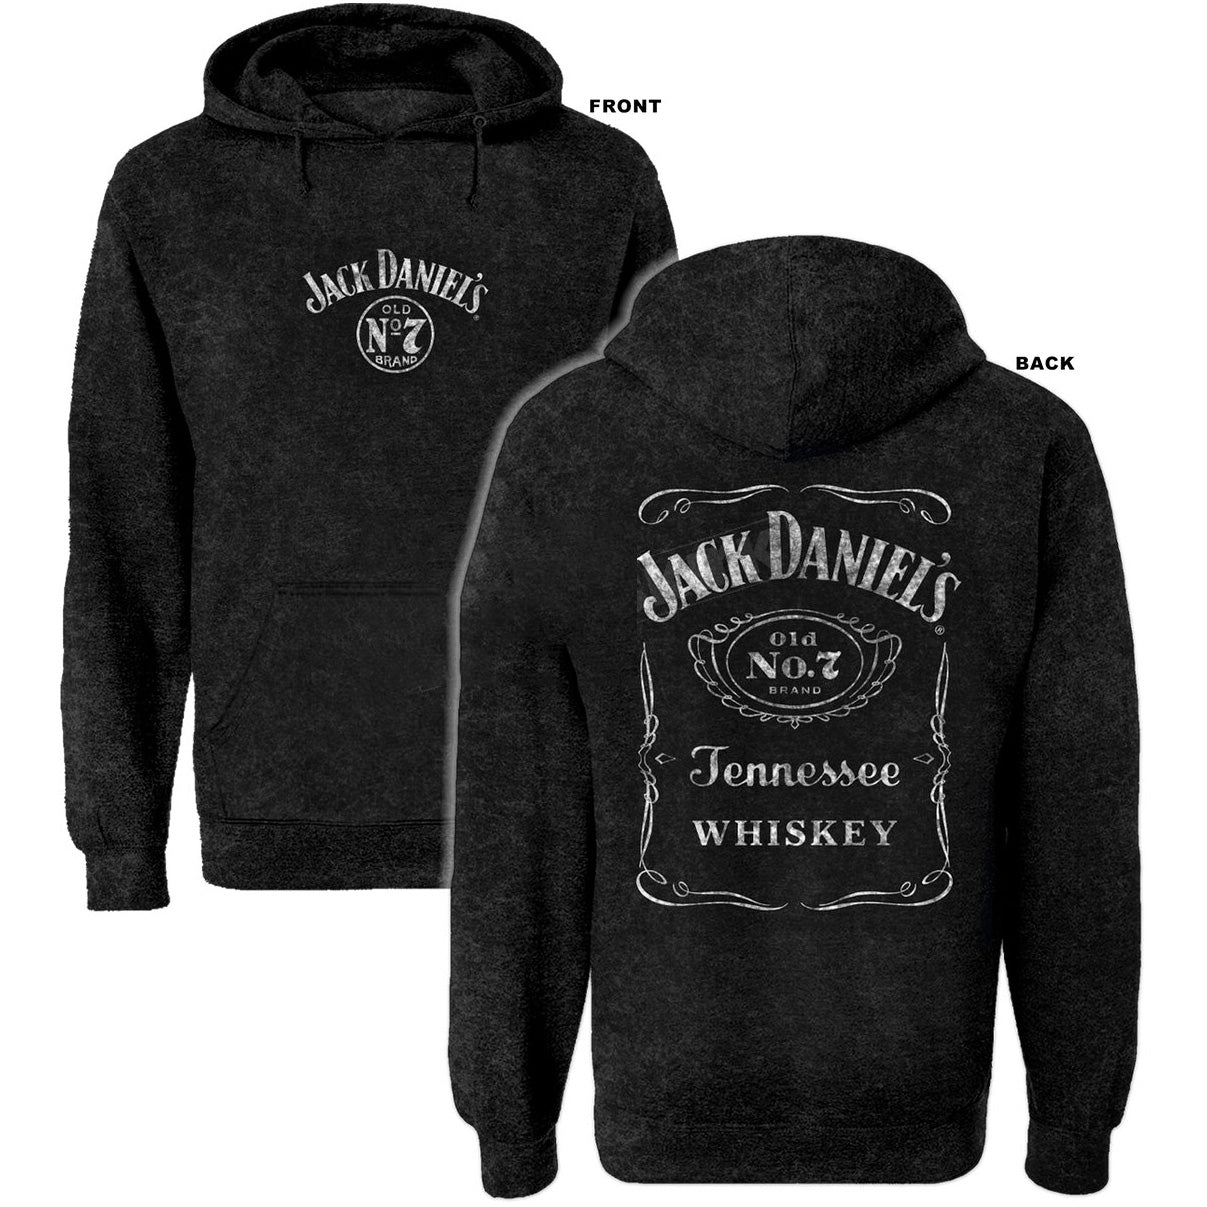 Changes Men's Jack Daniels Sweatshirt 02-261-44